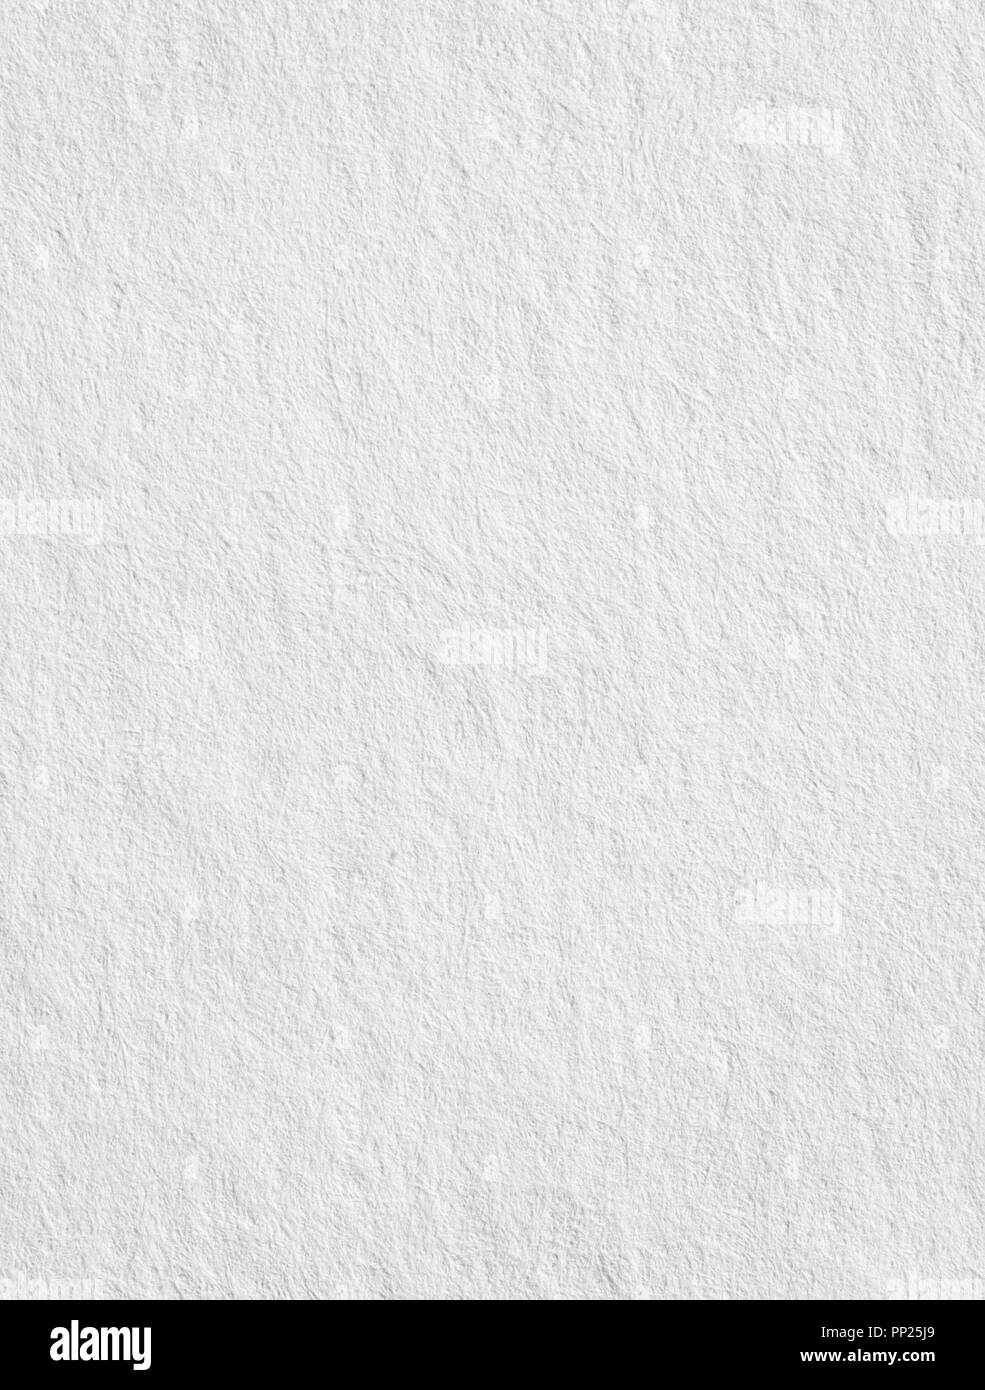 Vertical blanc texture rugueuse note papier, fond clair pour le texte Banque D'Images